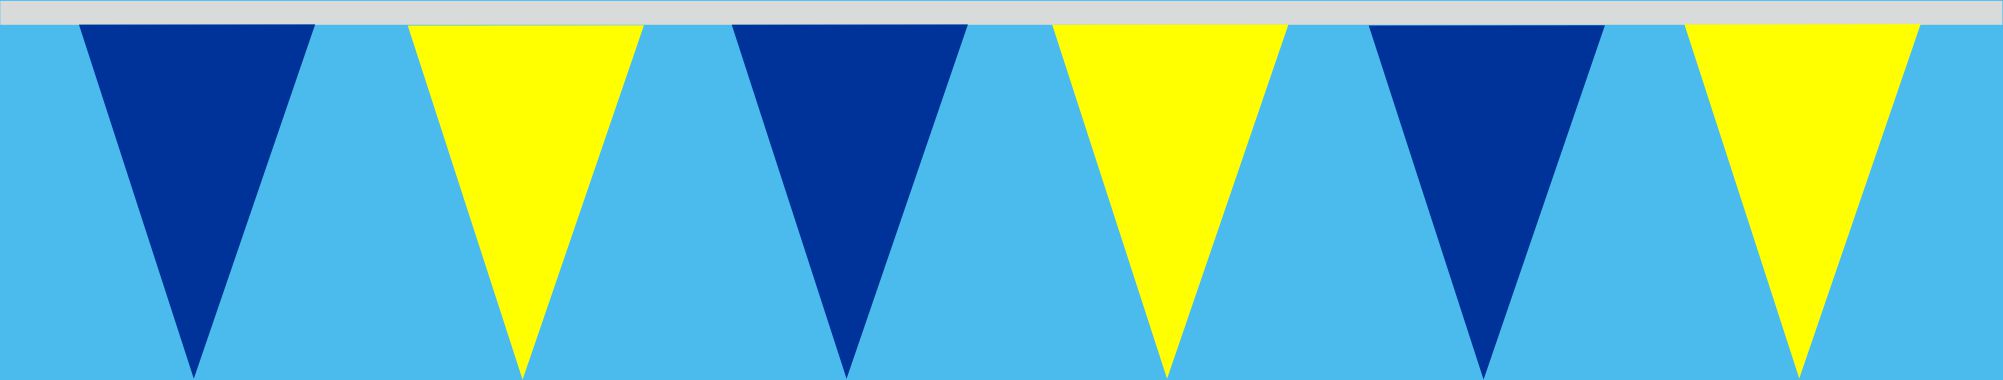 Wimpelkette gelb-blau 30x45